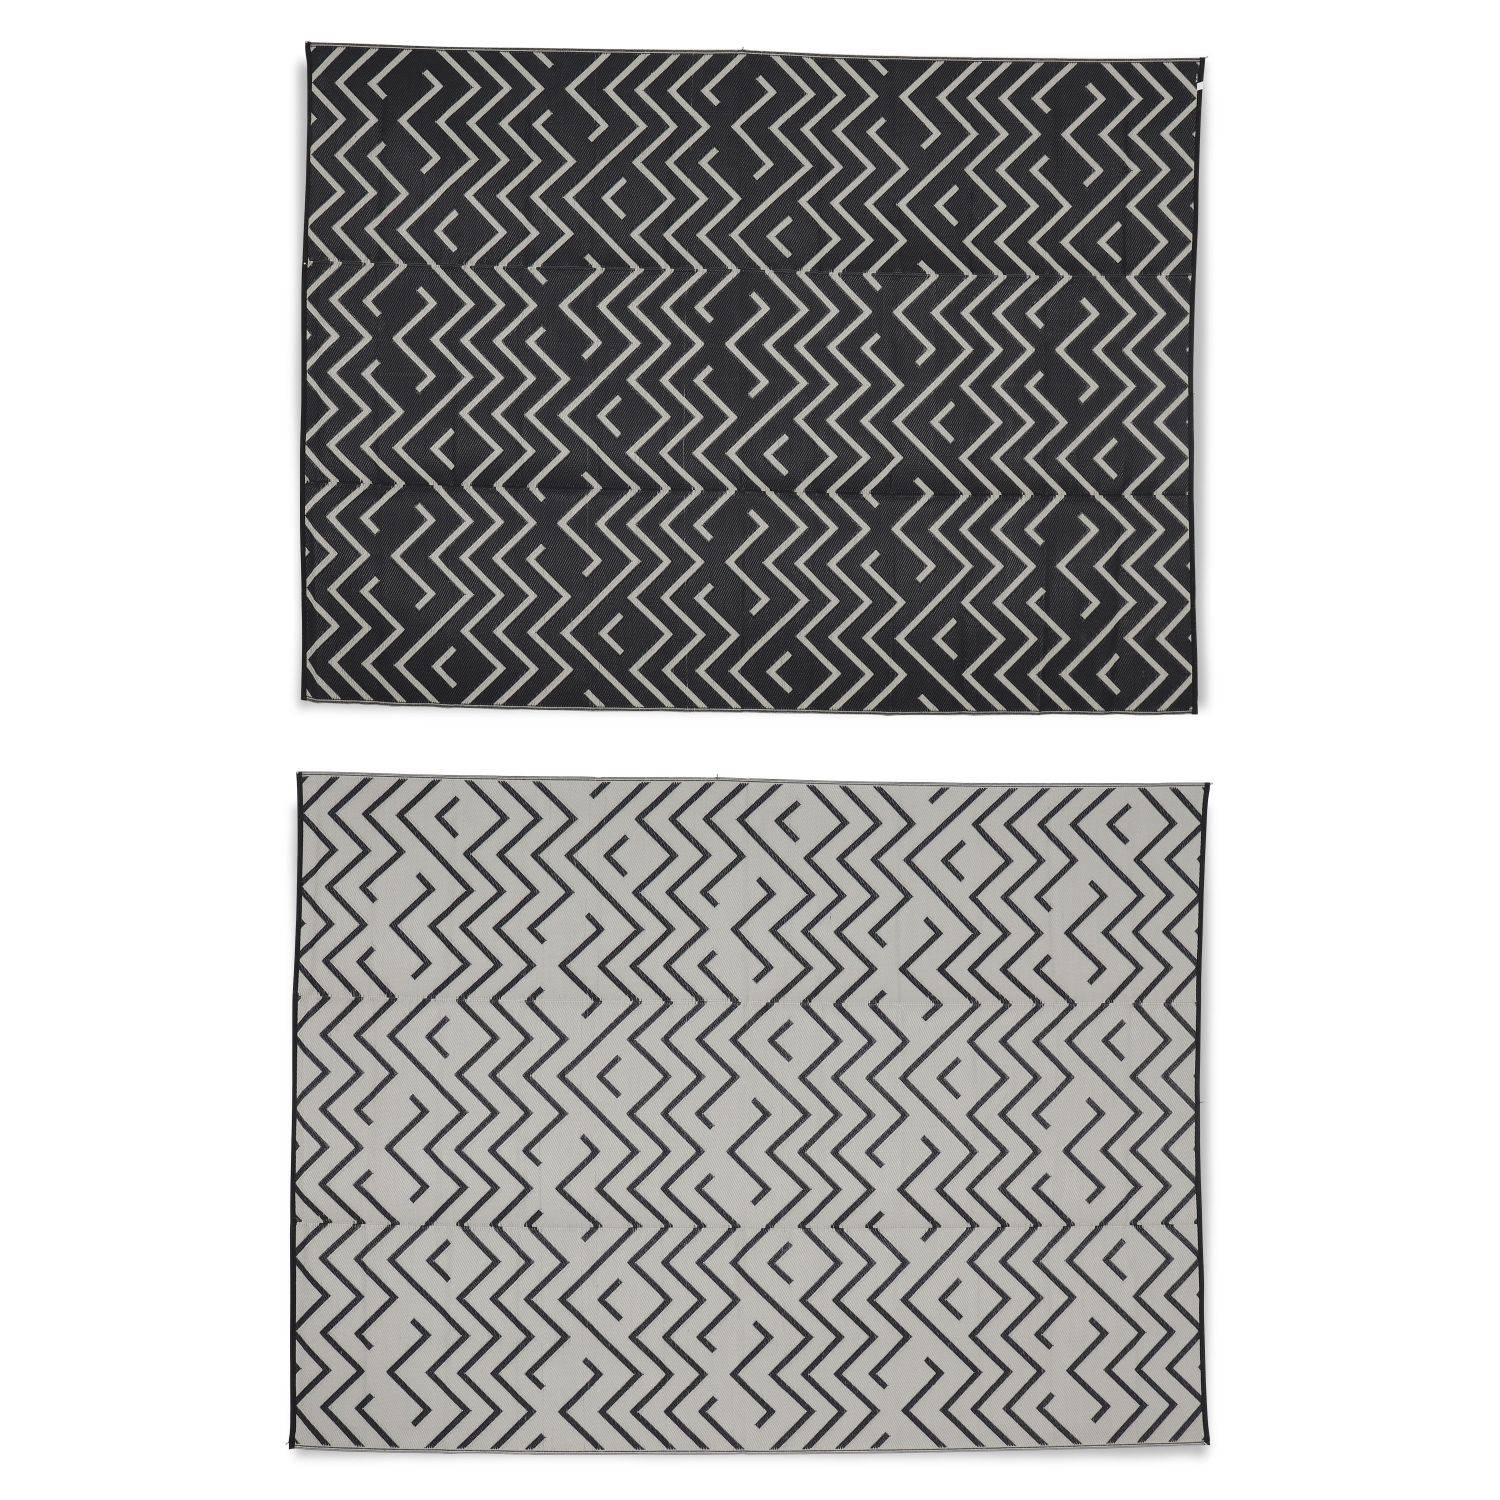 Outdoor Teppich 270 x 360 cm SYDNEY - Rechteckig, Wellenmuster schwarz / beige, Jacquard, wendbar, innen / außen,sweeek,Photo2